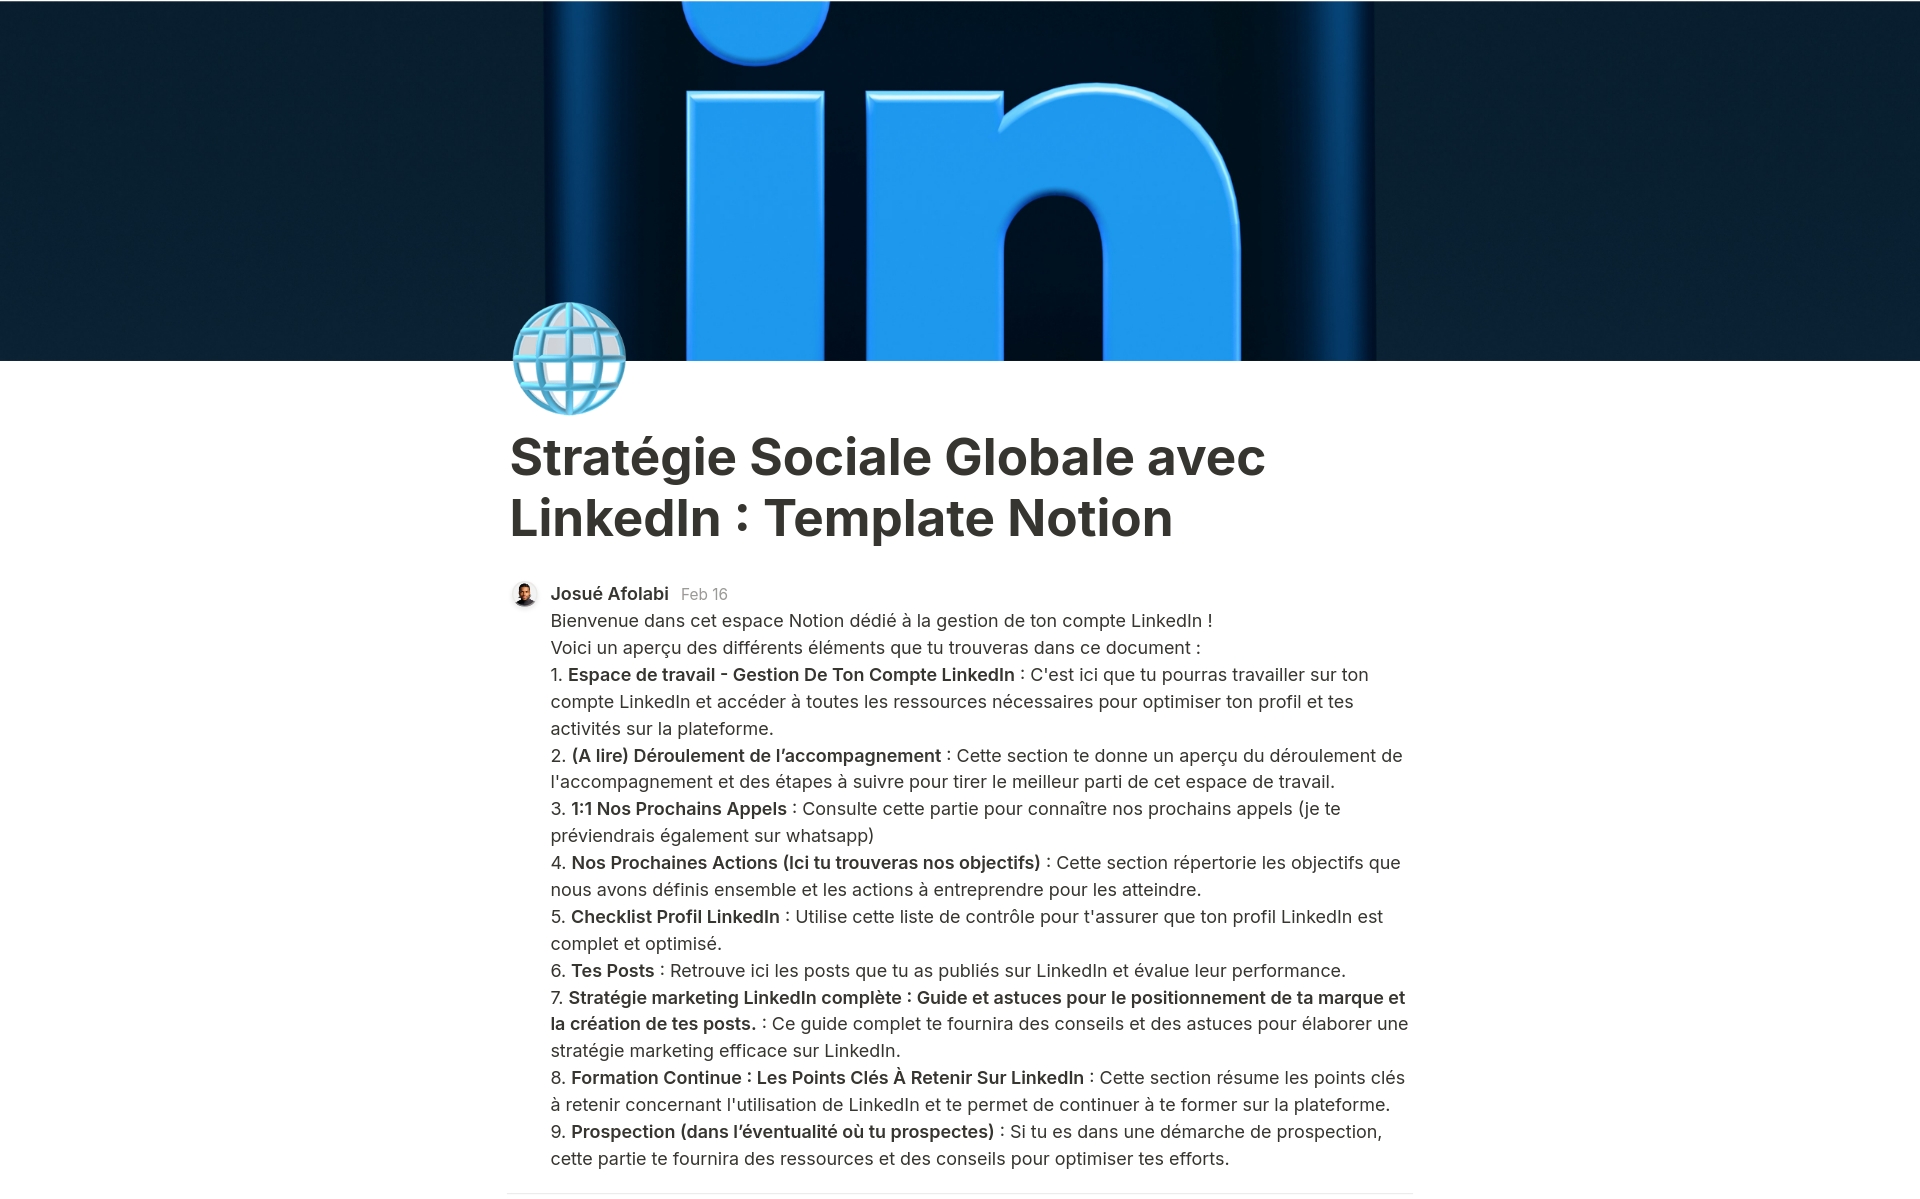 Uma prévia do modelo para Stratégie Sociale Globale avec LinkedIn 